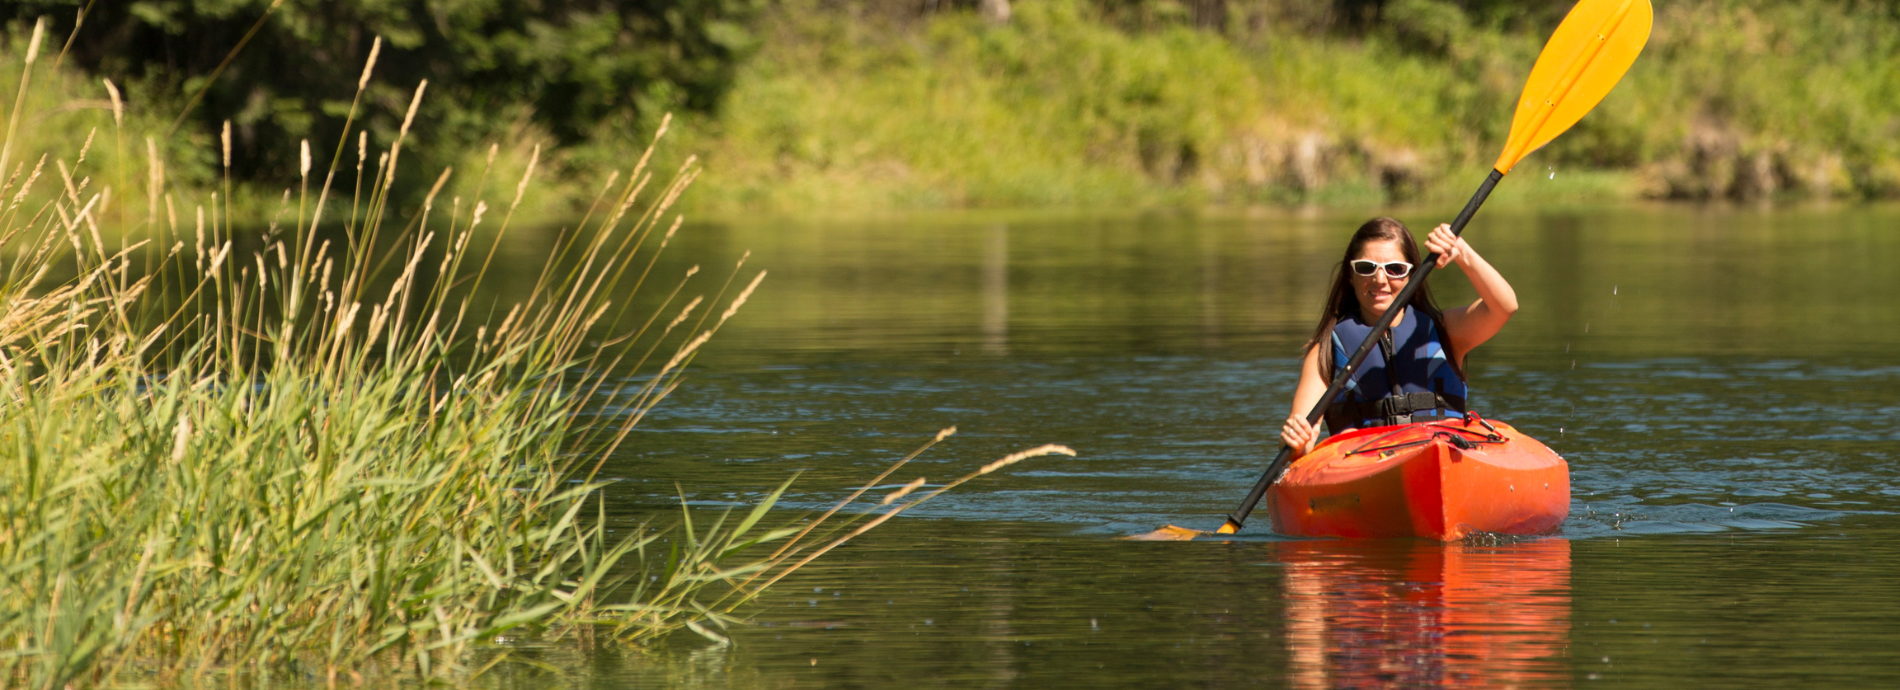 female paddler on a river